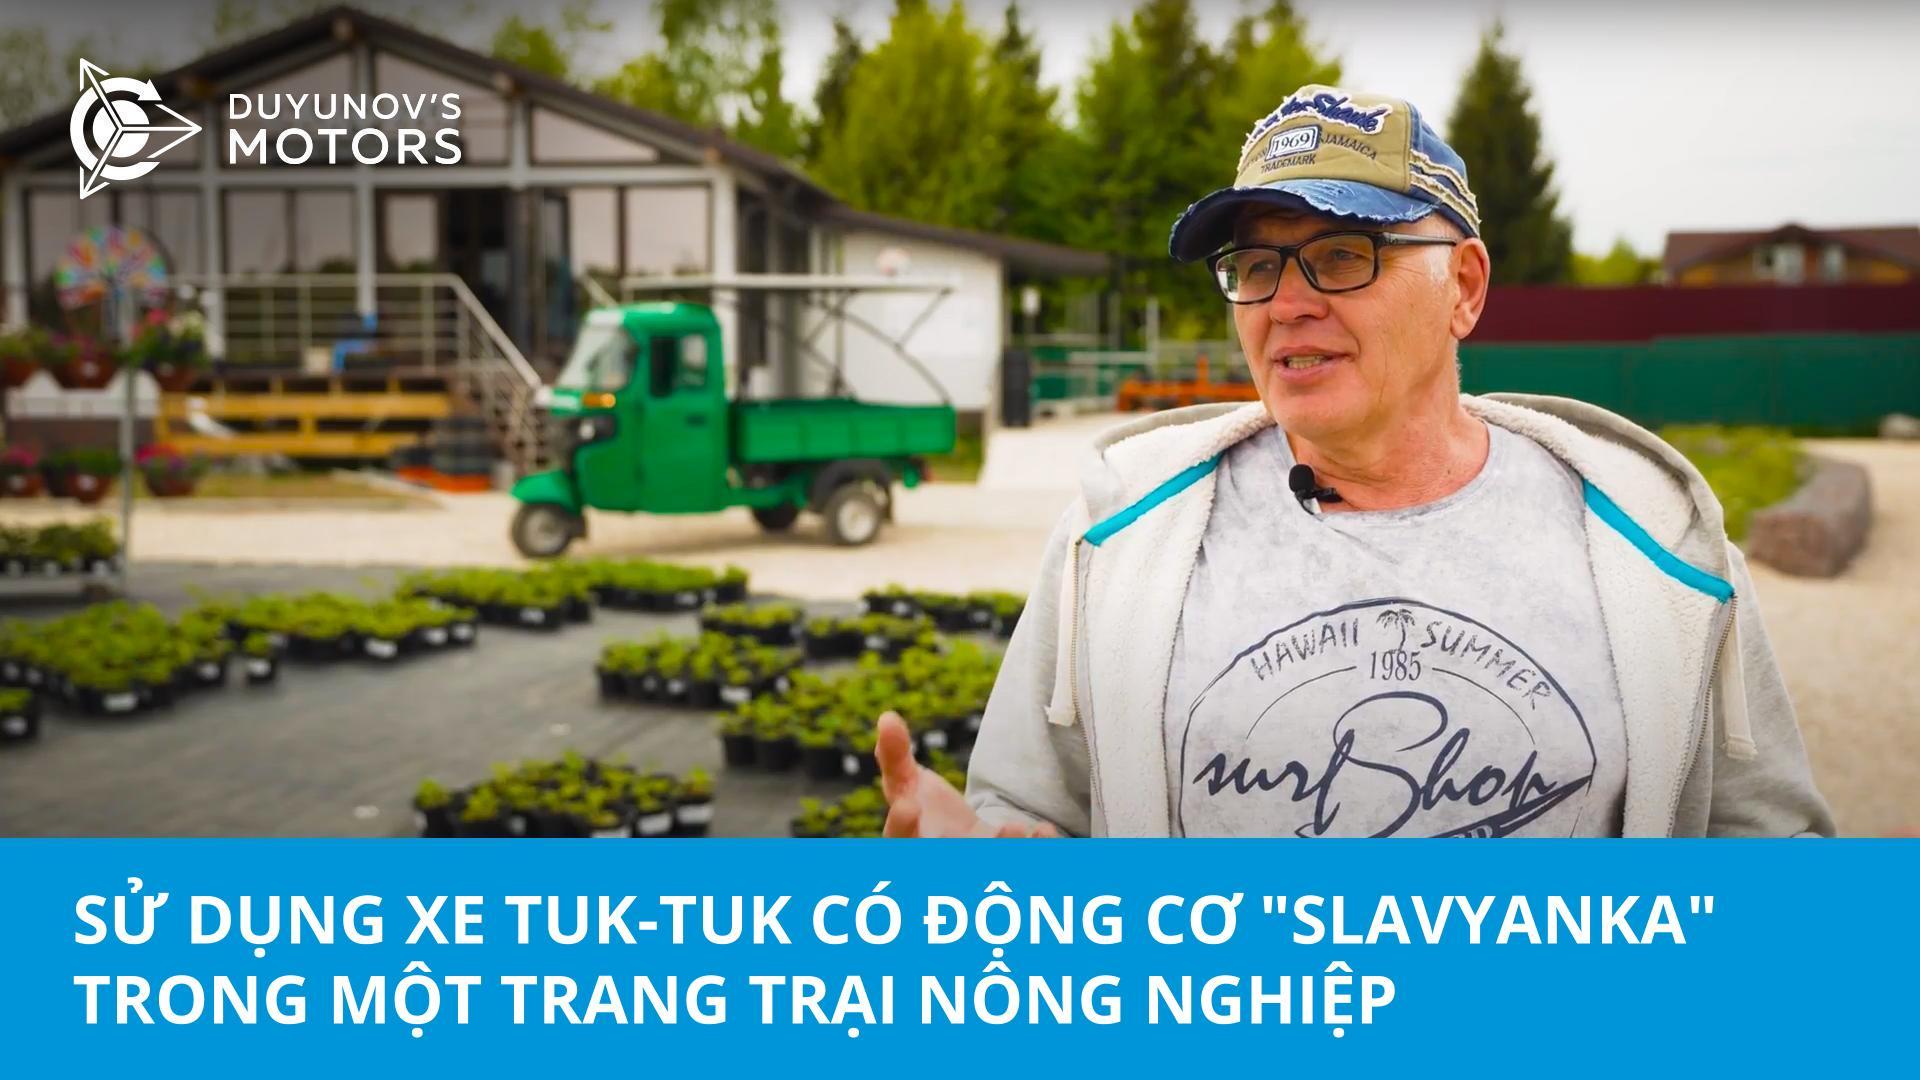 Trợ lý kinh doanh xanh: Sử dụng xe tuk-tuk có động cơ "Slavyanka" trong một trang trại nông nghiệp